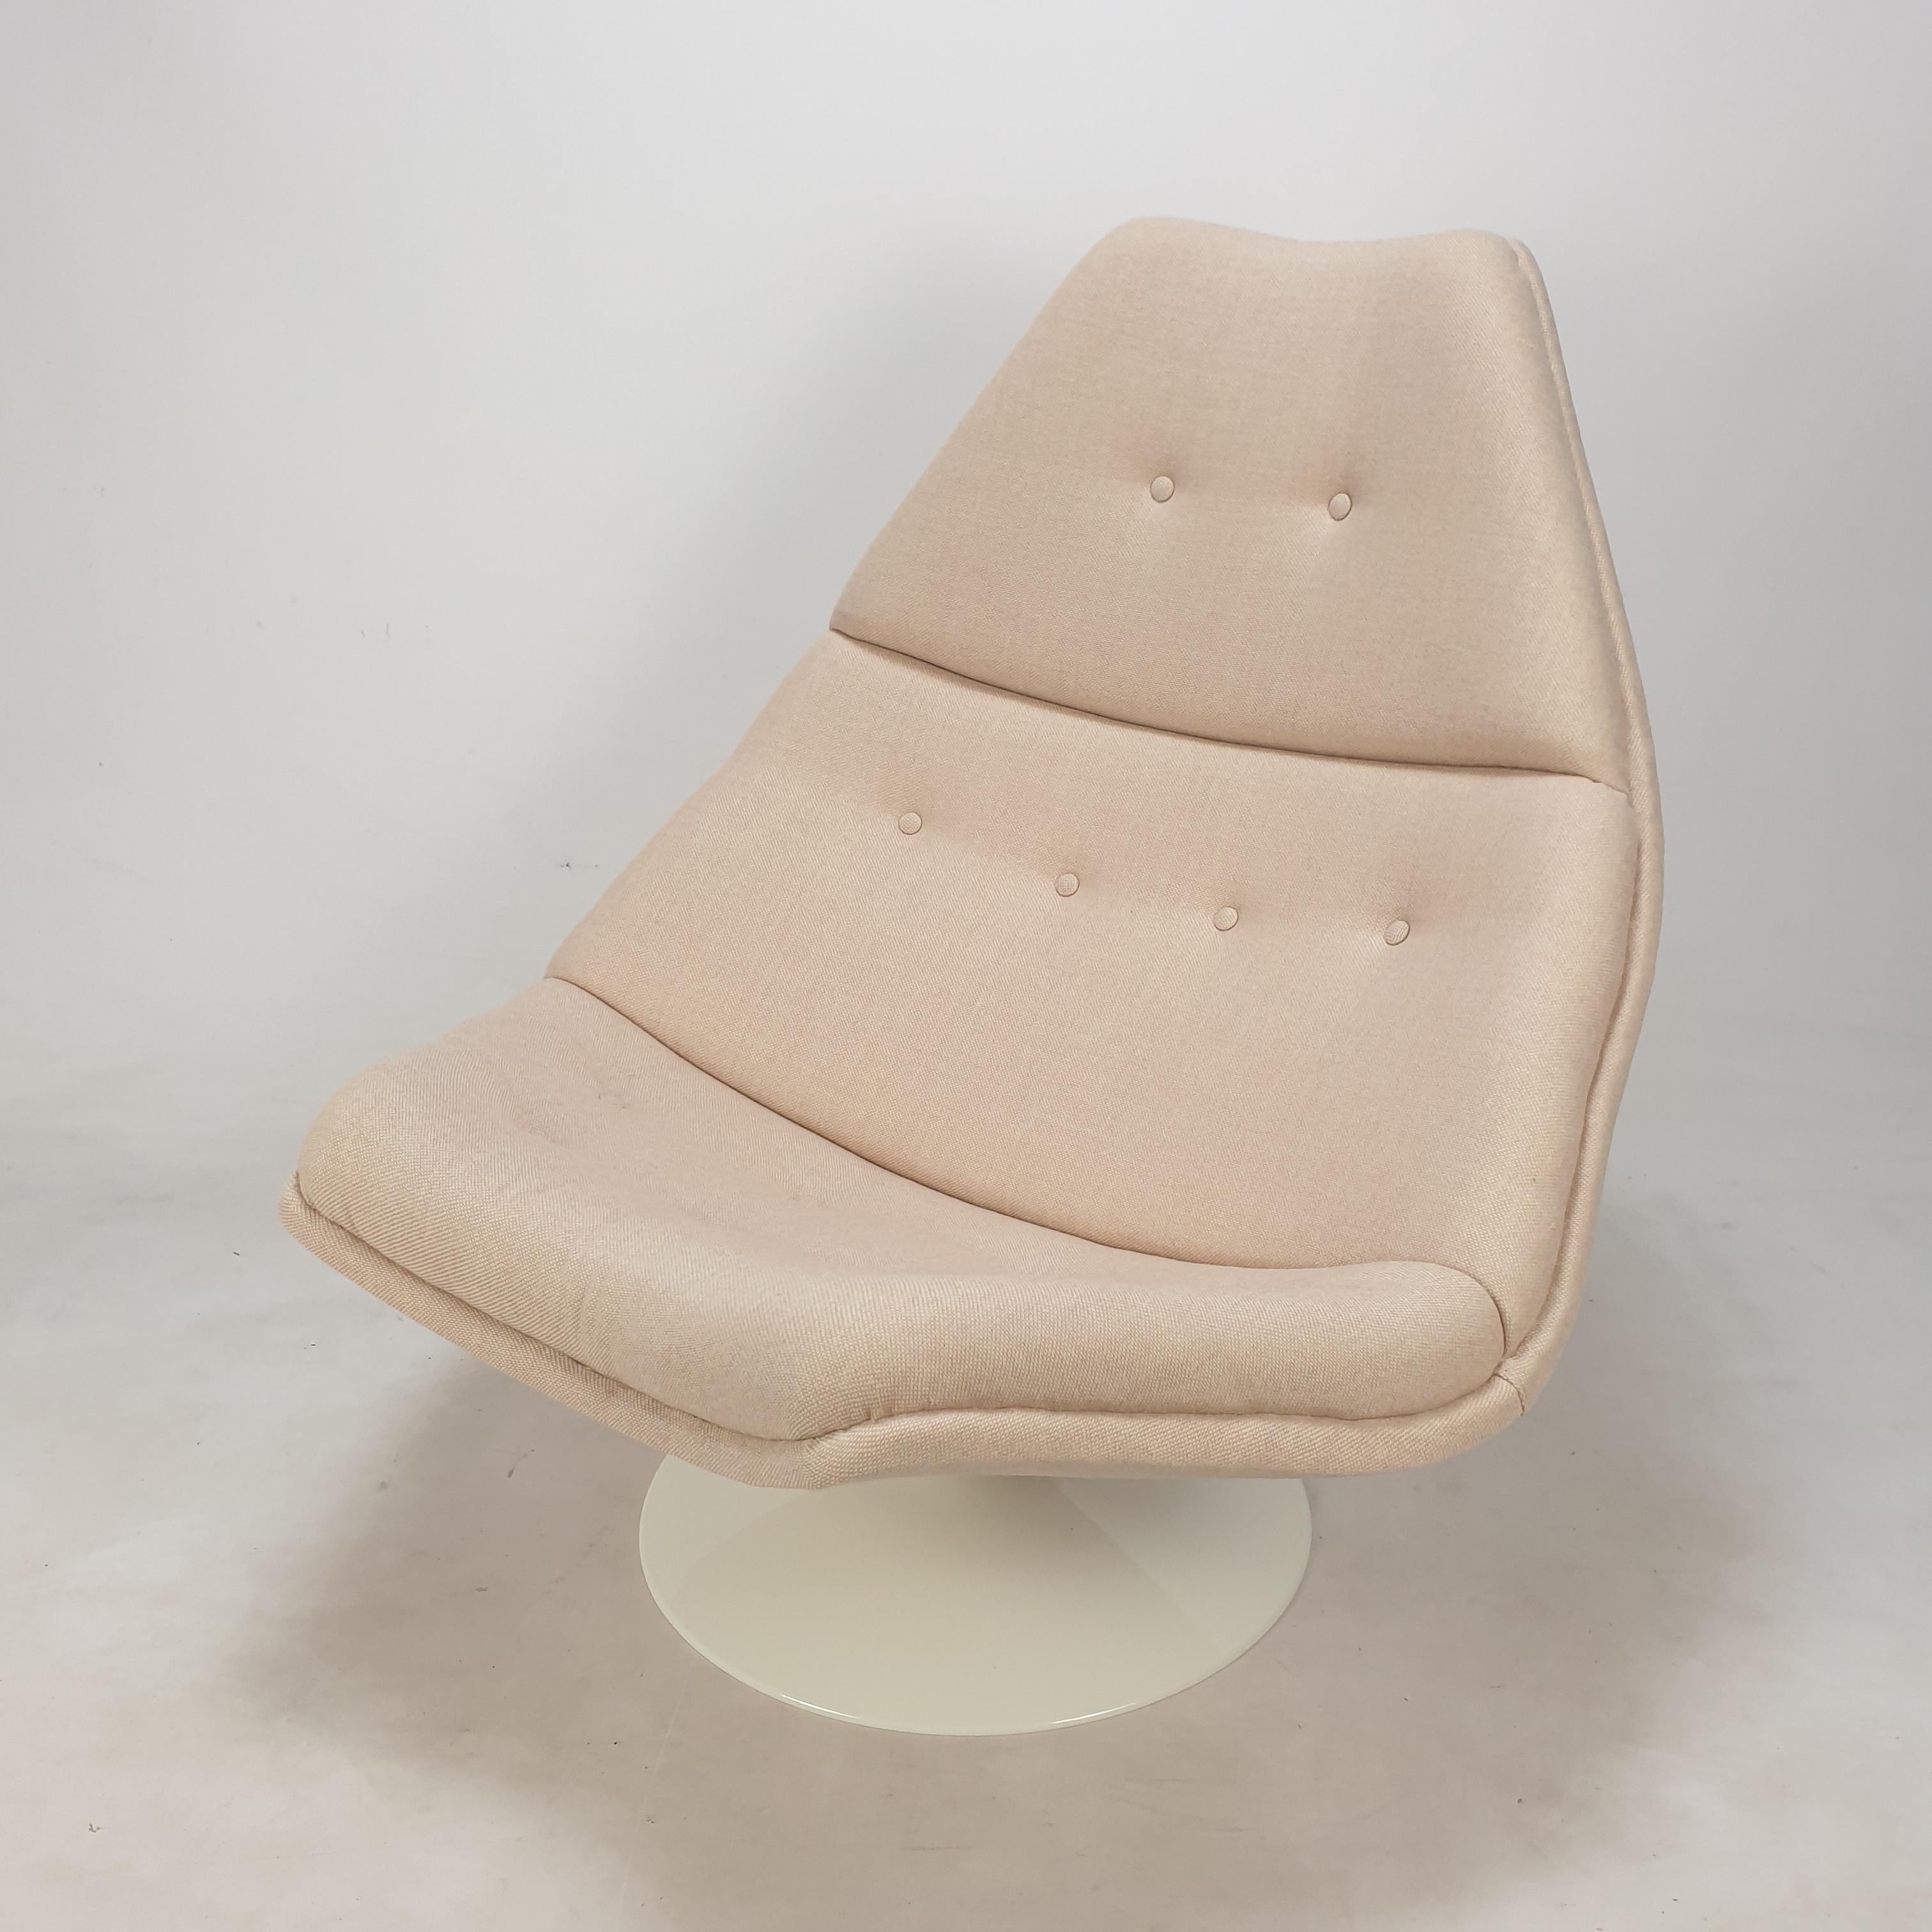 Chaise longue Artifort très confortable. 
Conçu par le célèbre designer anglais Geoffrey Harcourt dans les années 60. 

La chaise vient d'être restaurée avec un nouveau tissu et une nouvelle mousse.
Il a été retapissé avec un très beau tissu de